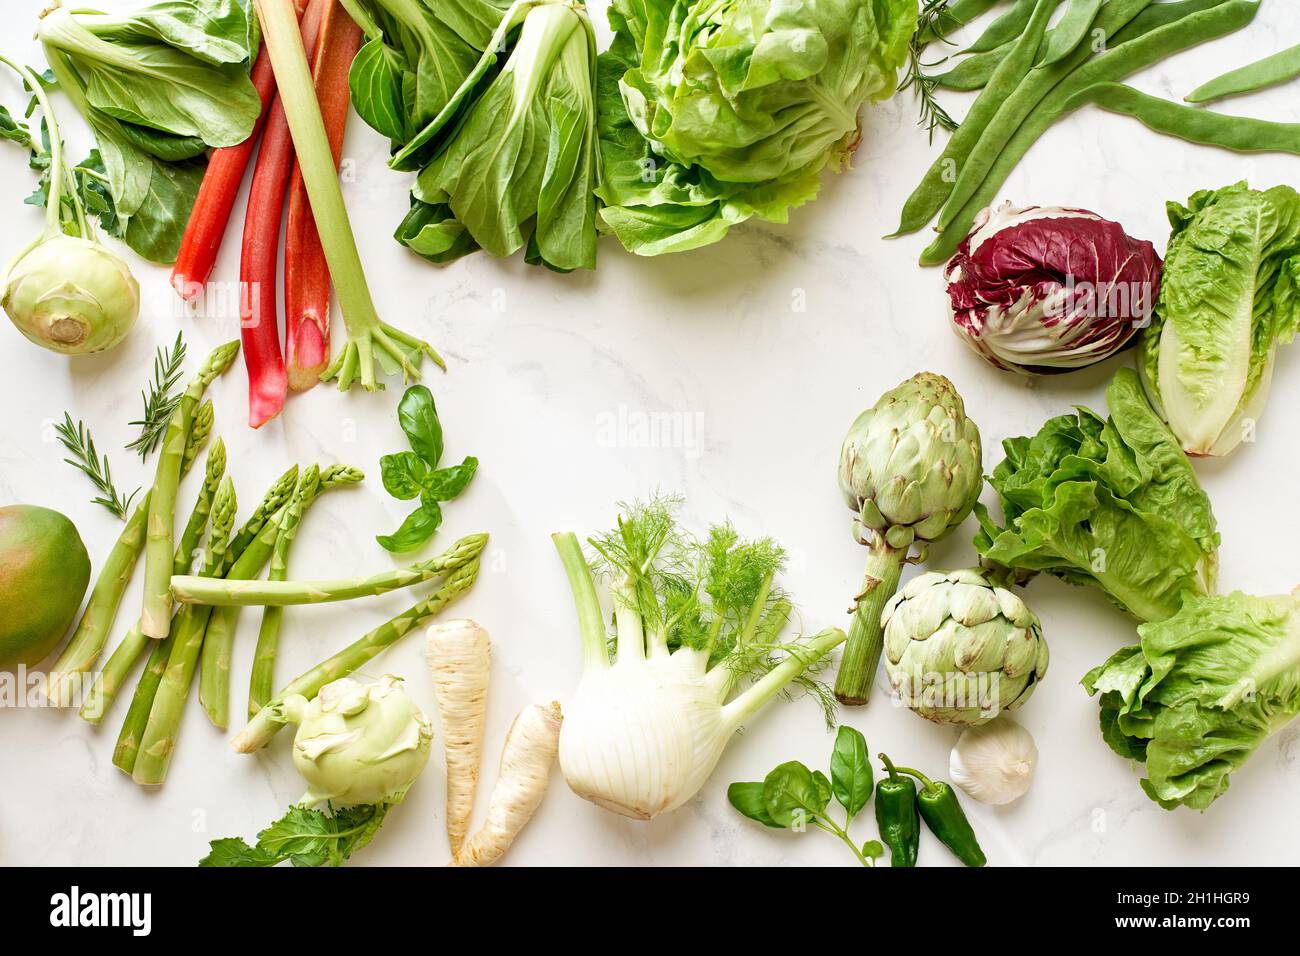 Plat avec ingrédients alimentaires végétaliens : salade et légumes vue de dessus sur table en marbre blanc avec espace pour copier dans le cadre Banque D'Images